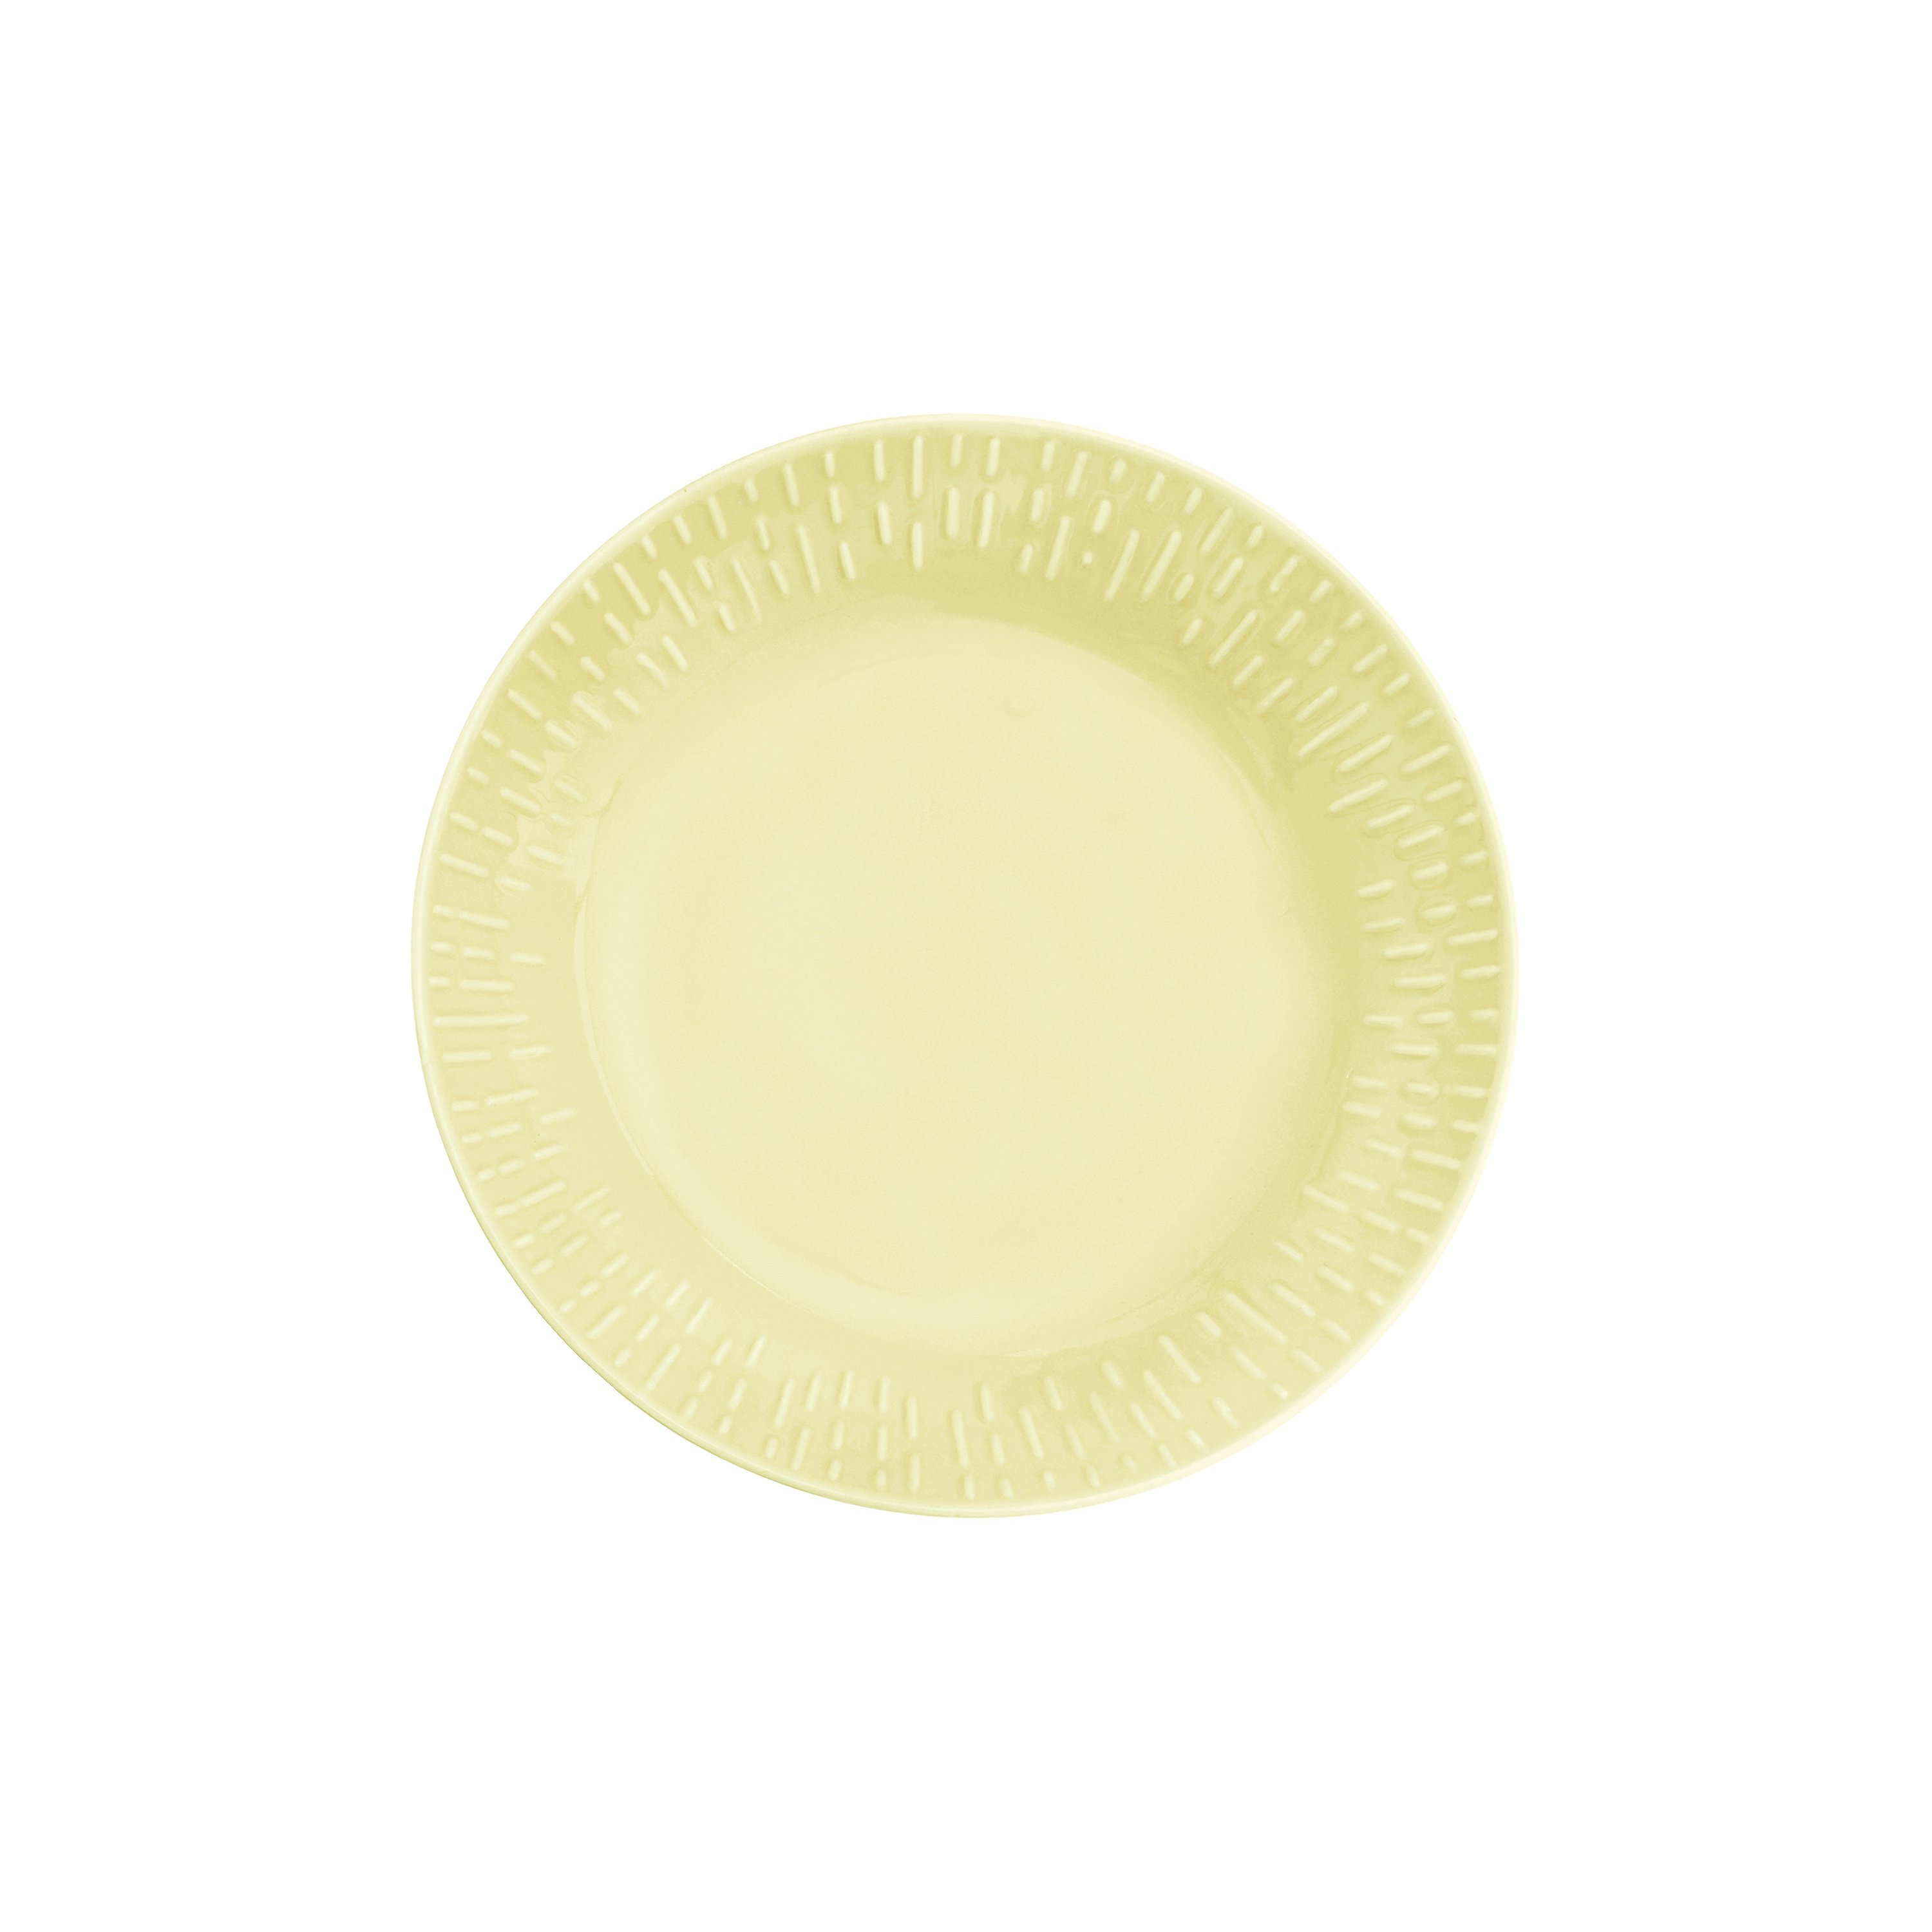 Aida - Life in Colour - Confetti - Lemon pasta plate w/relief porcelain (13304) - Hjemme og kjøkken